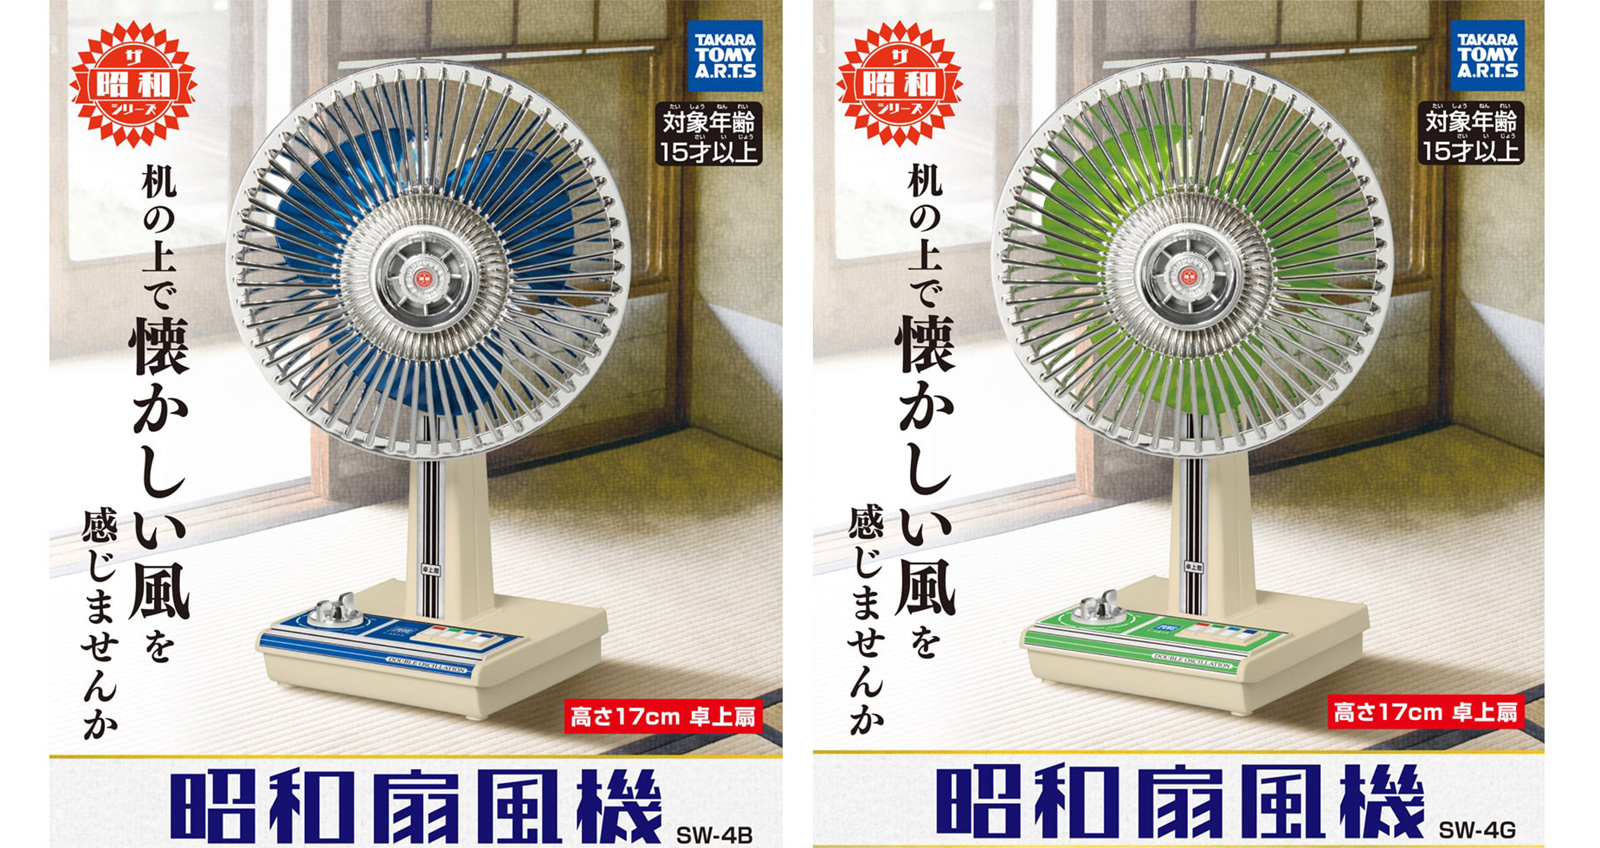 完全に昭和のそれ！昭和時代の懐かしレトロ扇風機がミニチュアサイズで発売！ (2019年4月29日) - エキサイトニュース